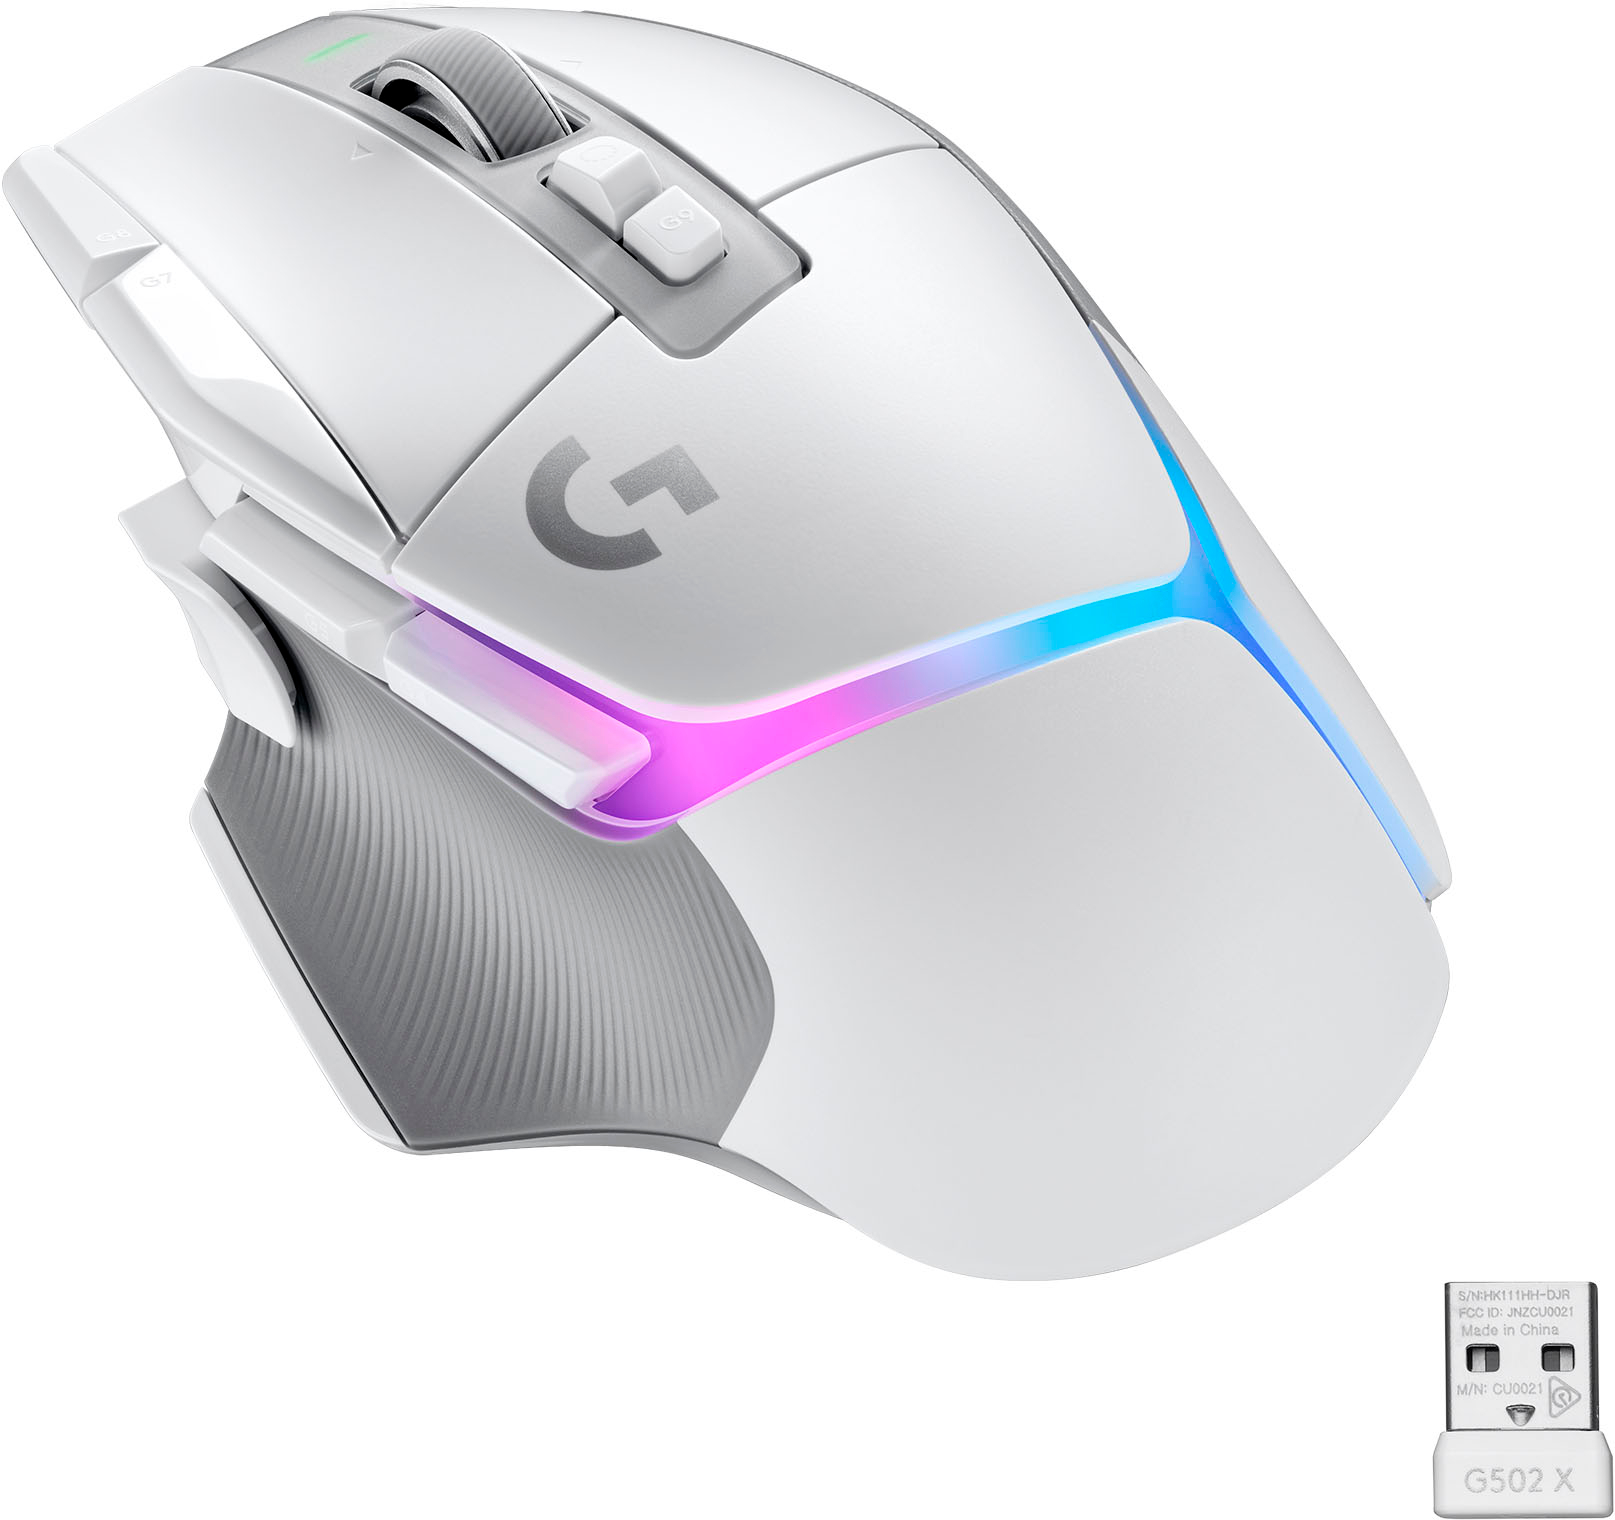 Ugyldigt Majroe i tilfælde af Logitech G502 X PLUS LIGHTSPEED Wireless Gaming Mouse with HERO 25K Sensor  White 910-006169 - Best Buy